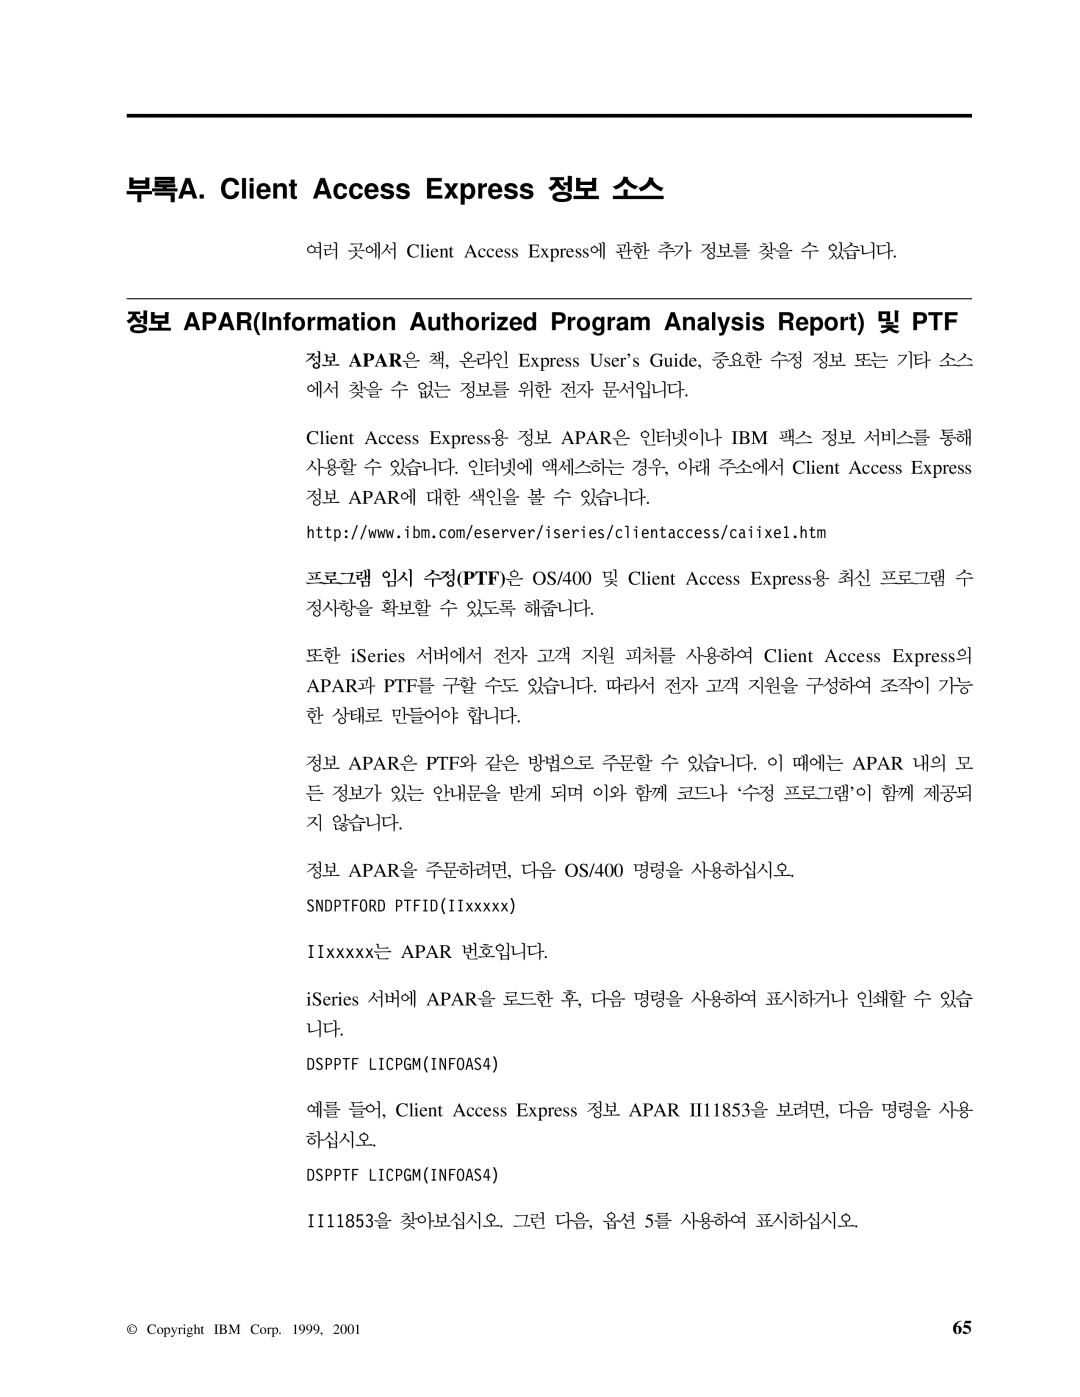 IBM SA30-0949-02 manual APARInformation Authorized Program Analysis Report PTF 